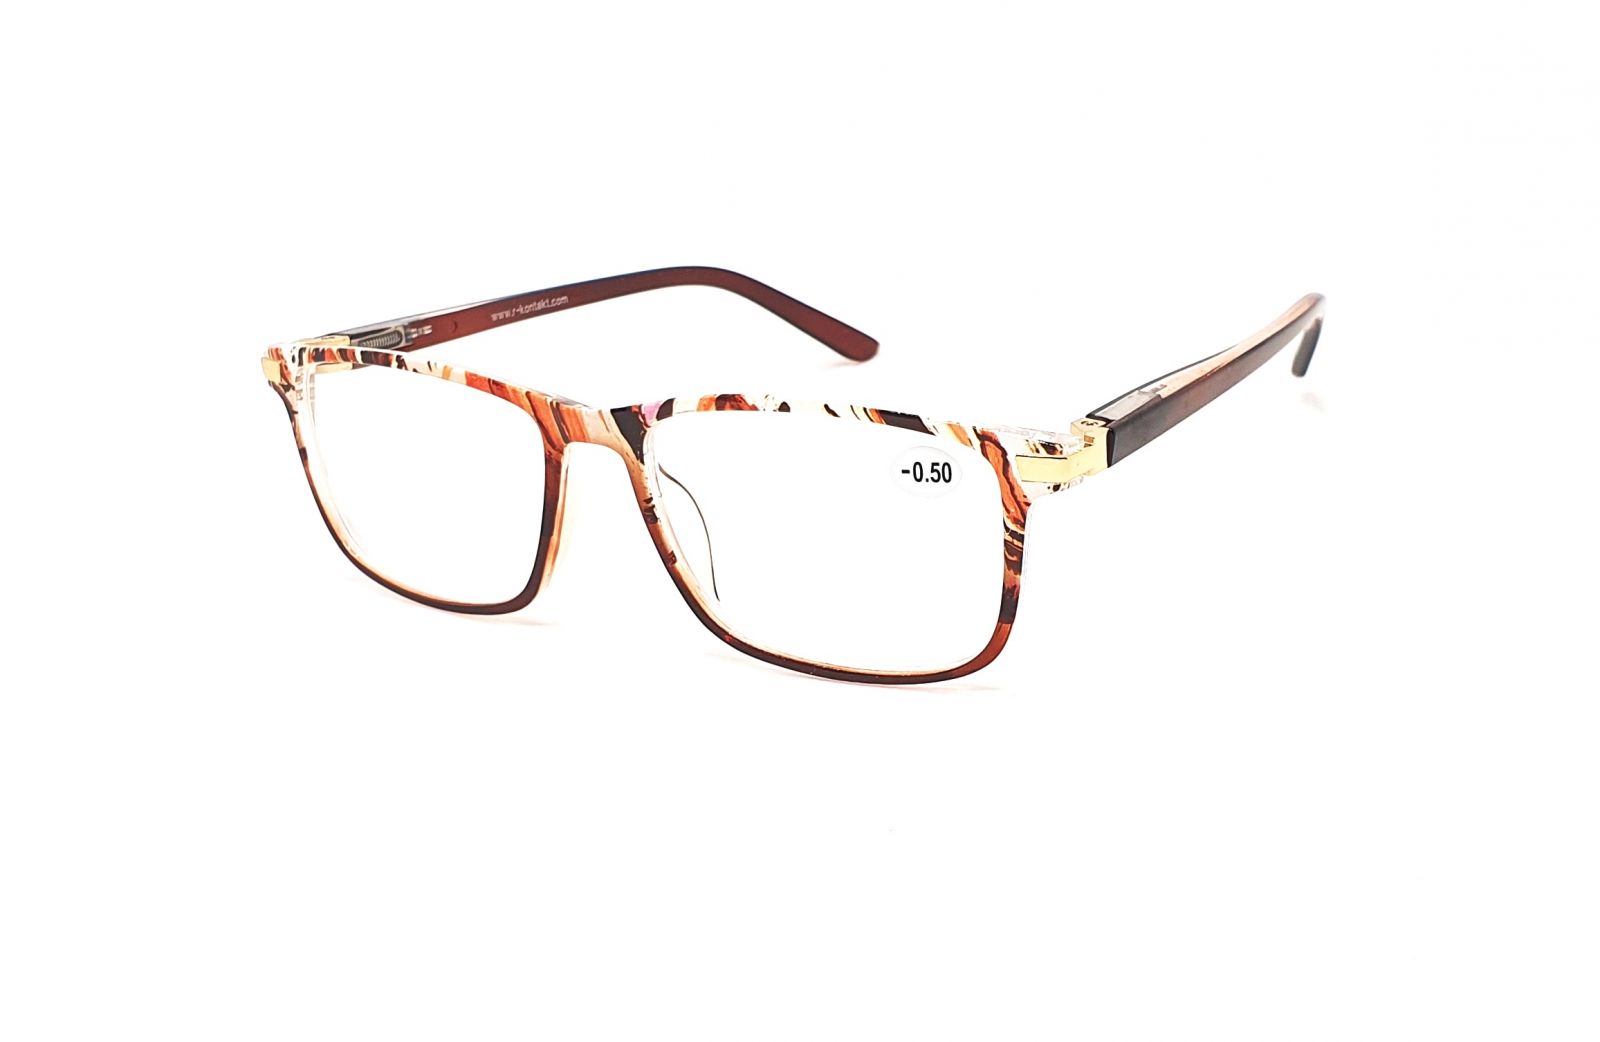 Dioptrické brýle V3075 / -2,50 brown flex